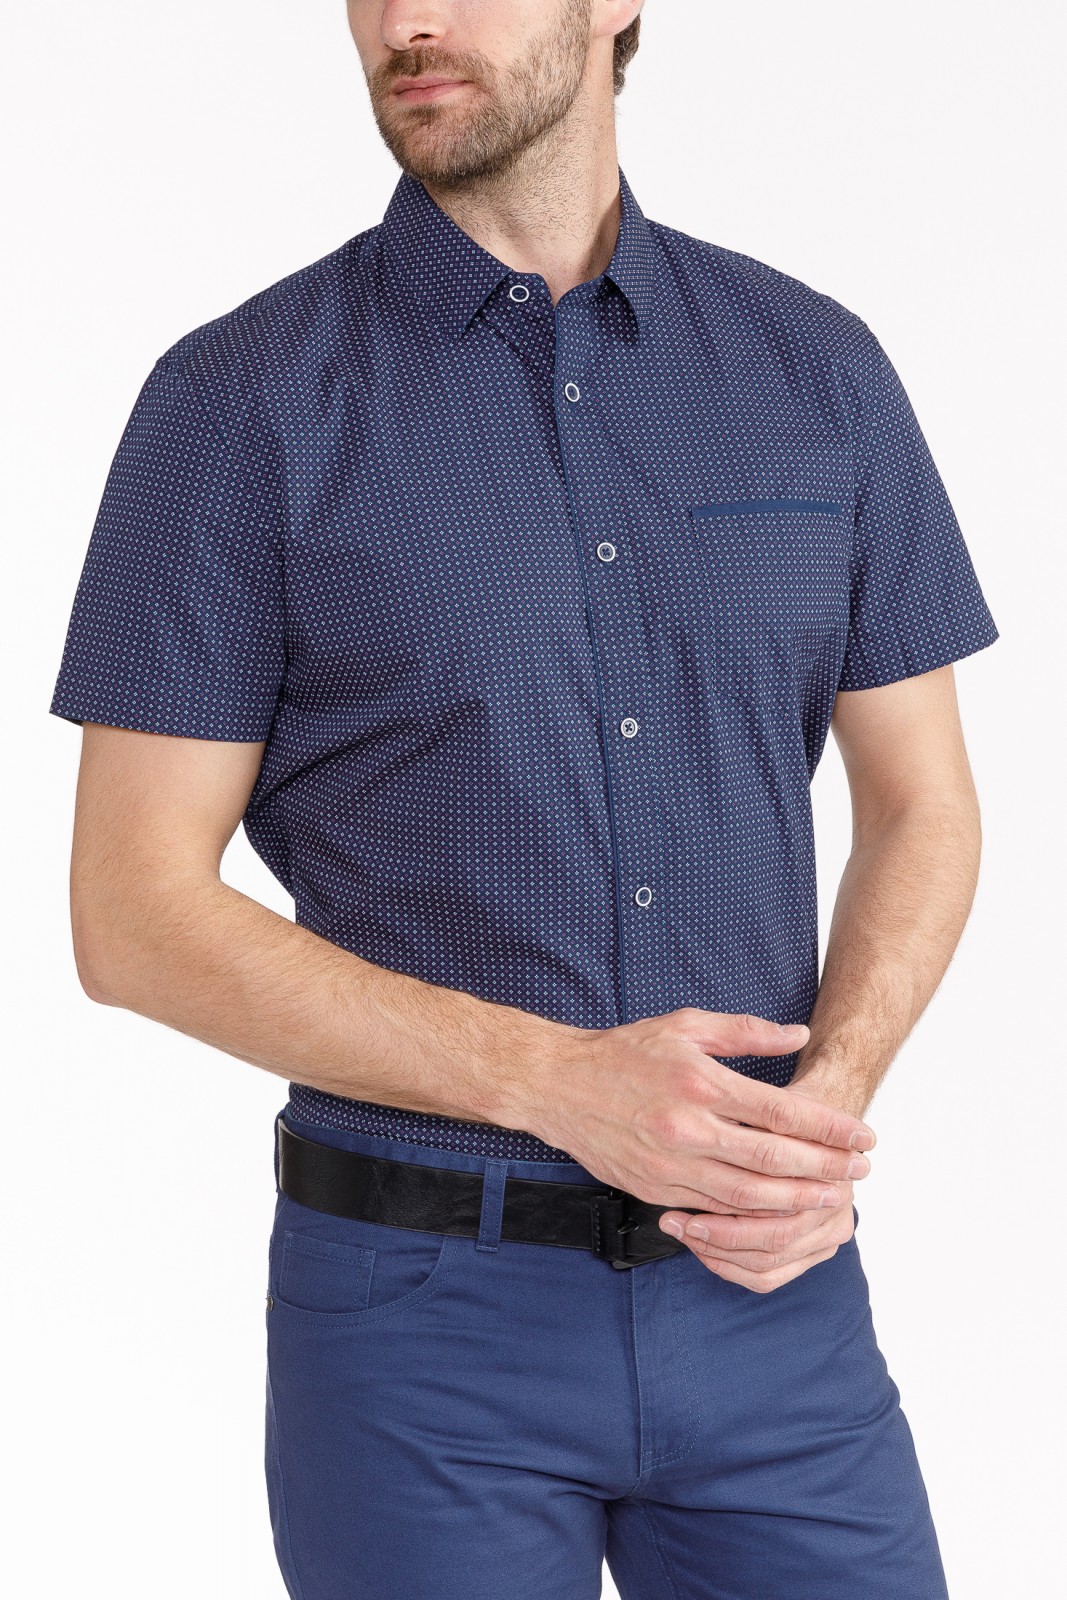 Рубашка с  короткими рукавами zolla 010242259163, цвет темно-синий, размер S